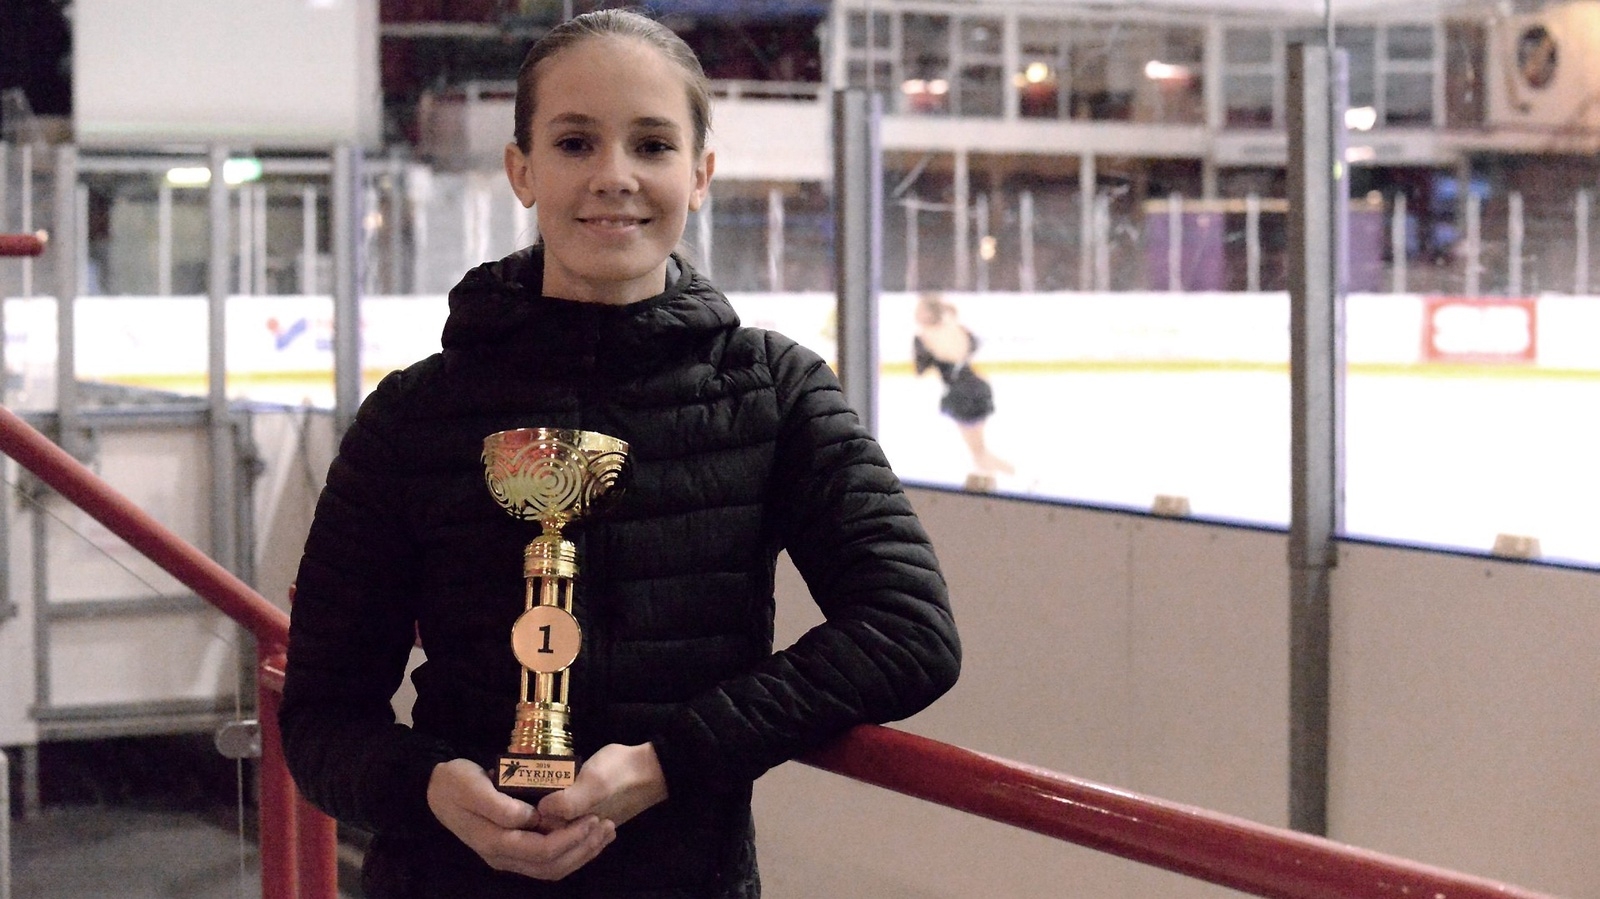 Osby KK:s Elsa Idström vann Tyringehoppet tidigare under säsongen, och med en bra prestation ska hon kunna ta medalj i DM som avgörs på hemmaplan. Foto: Robert Rolf/Arkiv